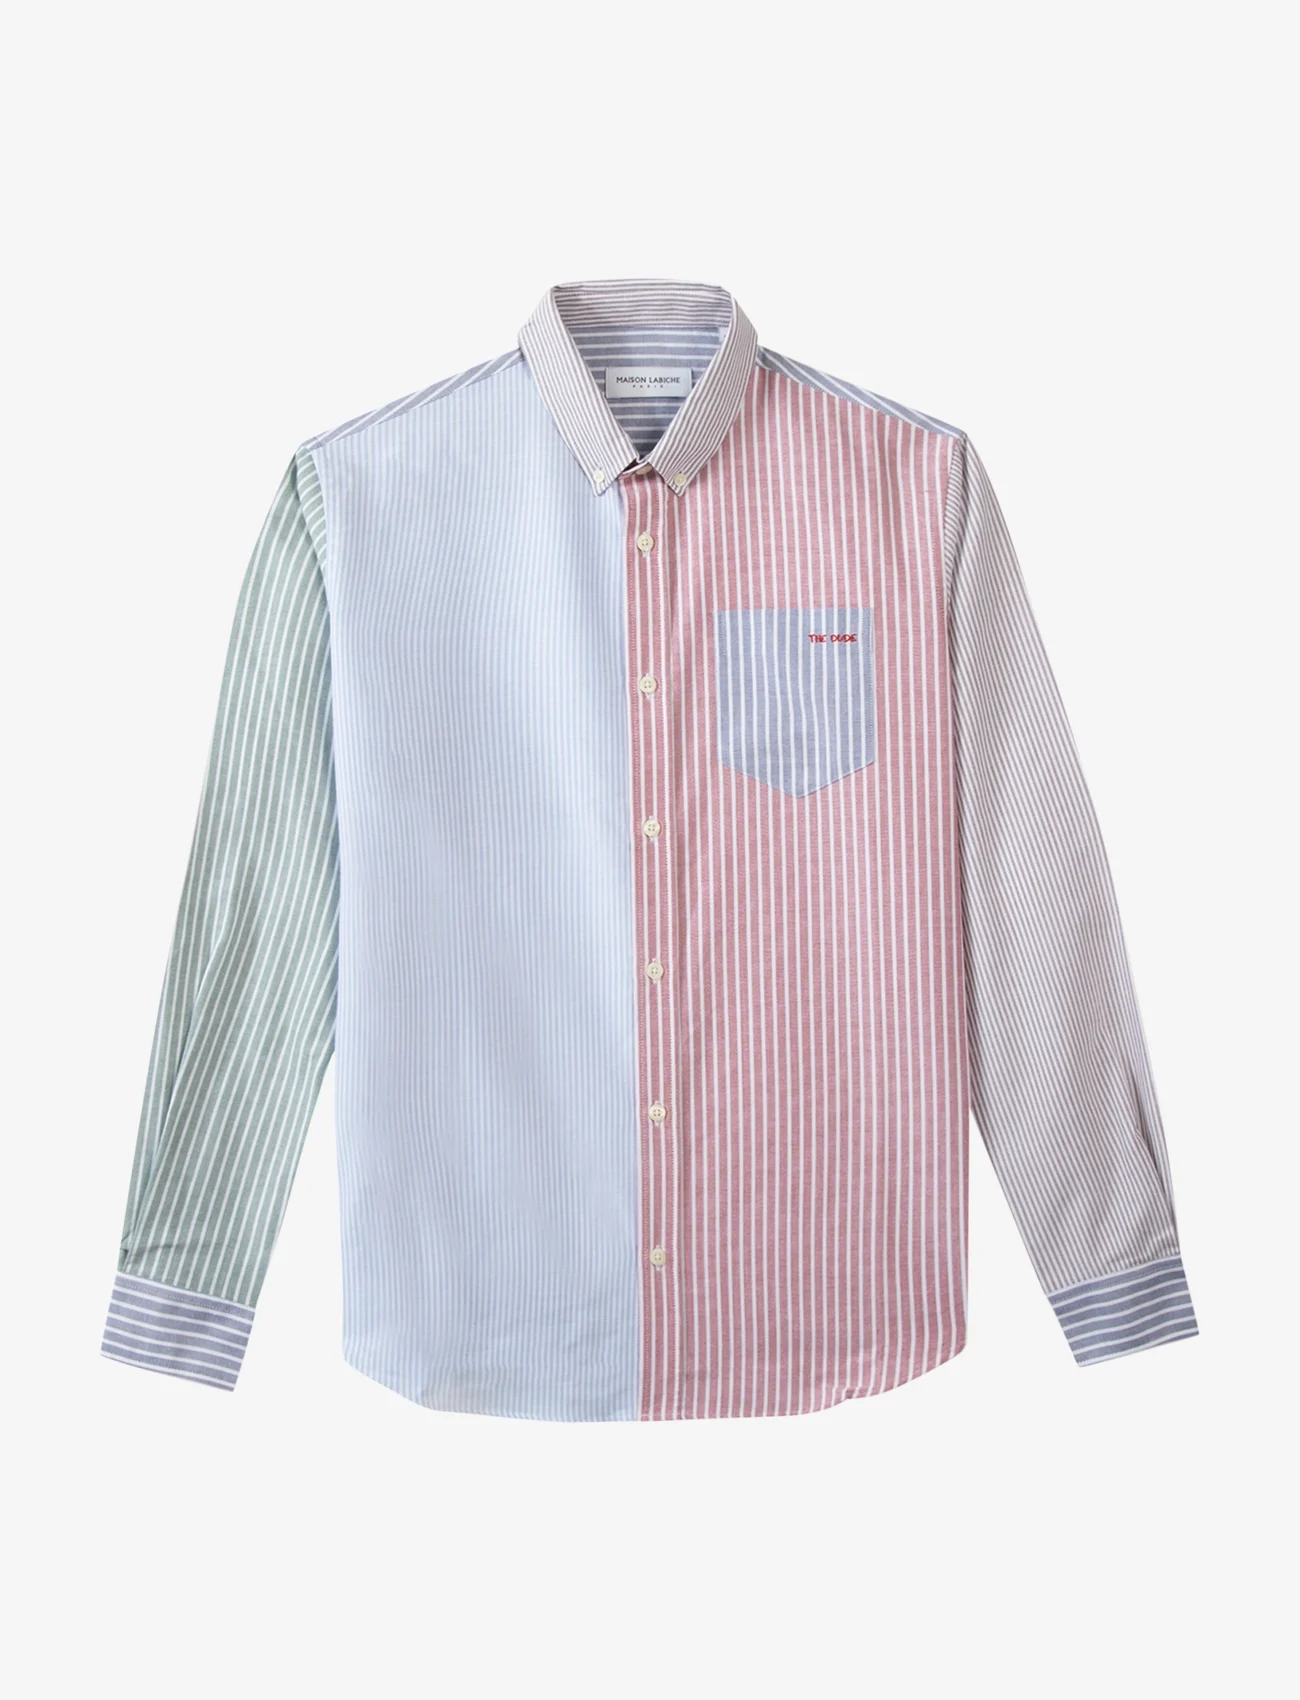 Maison Labiche Paris - BONNE GRAINE THE DUDE - koszule casual - stripeaw22 patchwork - 0